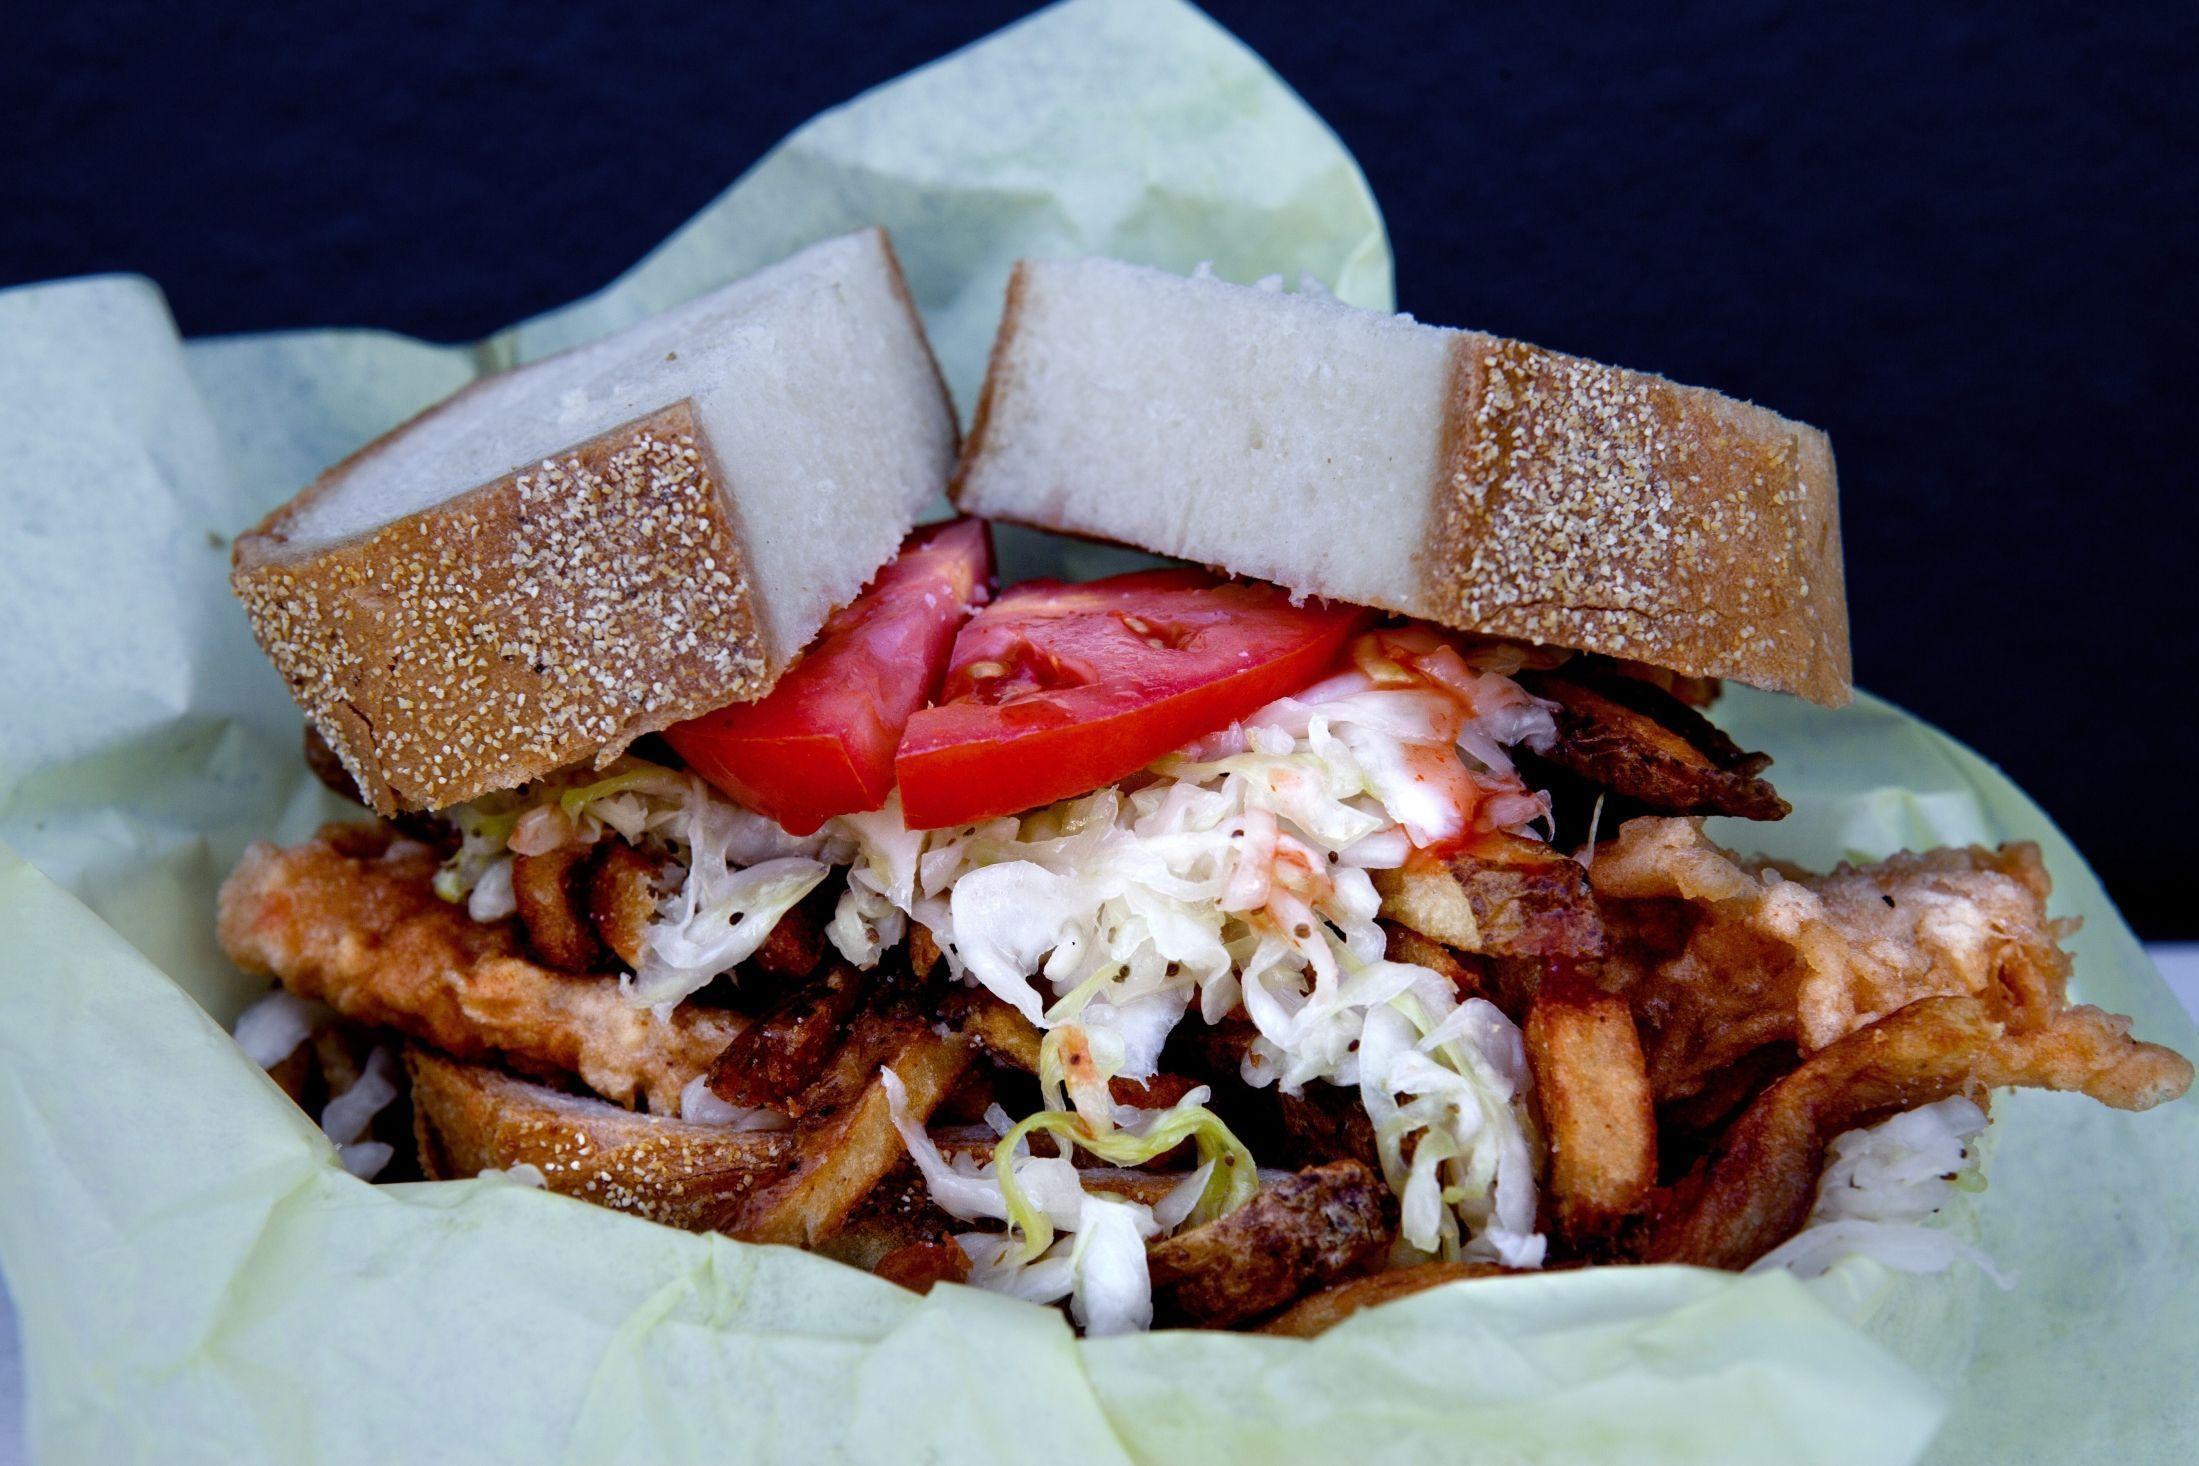 GODT OG BLANDET: Hos foodtruckene i USA kan du blant annet finne sandwich med torsk. Denne er fra Steel City Sandwich i Los Angeles, der maten opprinnelig er fra Pittsburgh, men med polske innflytelser. Foto: Thomas Nilsson/VG